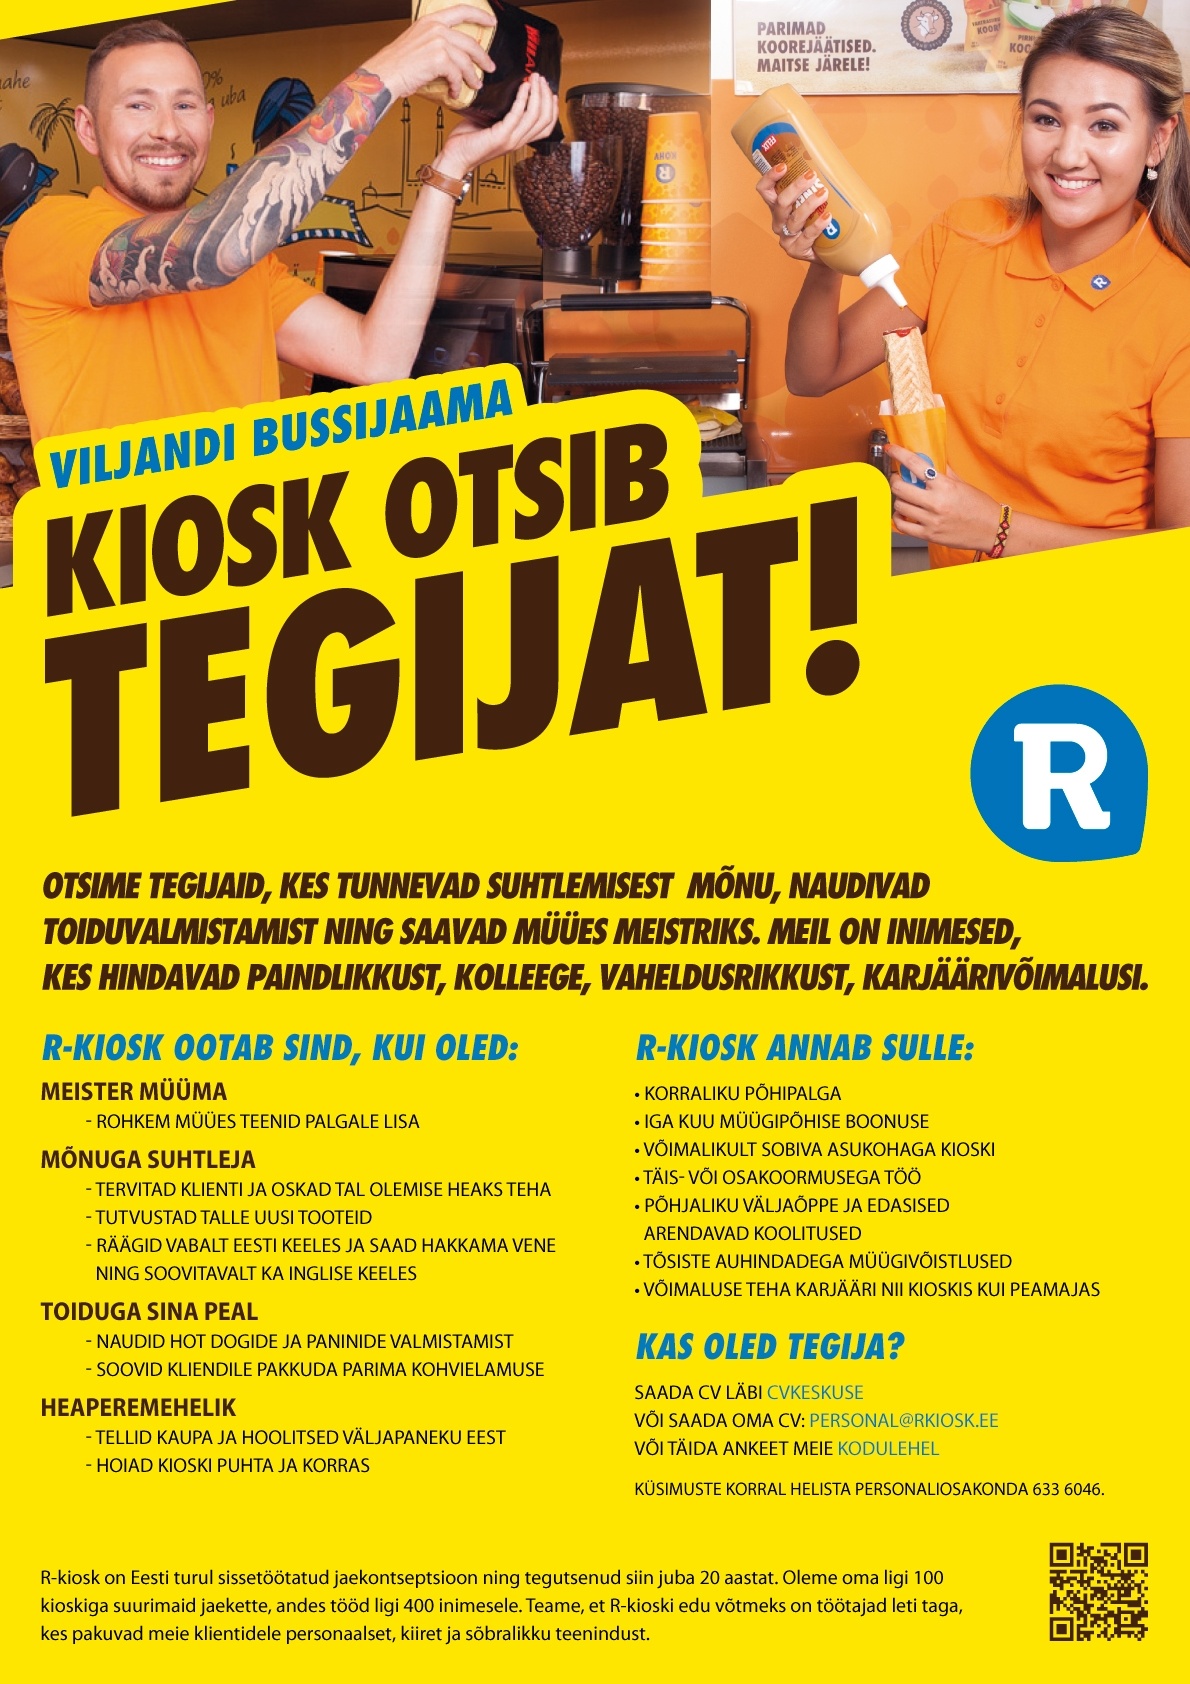 AS R-Kiosk Estonia Klienditeenindaja Viljandi Bussijaama R-kioskisse